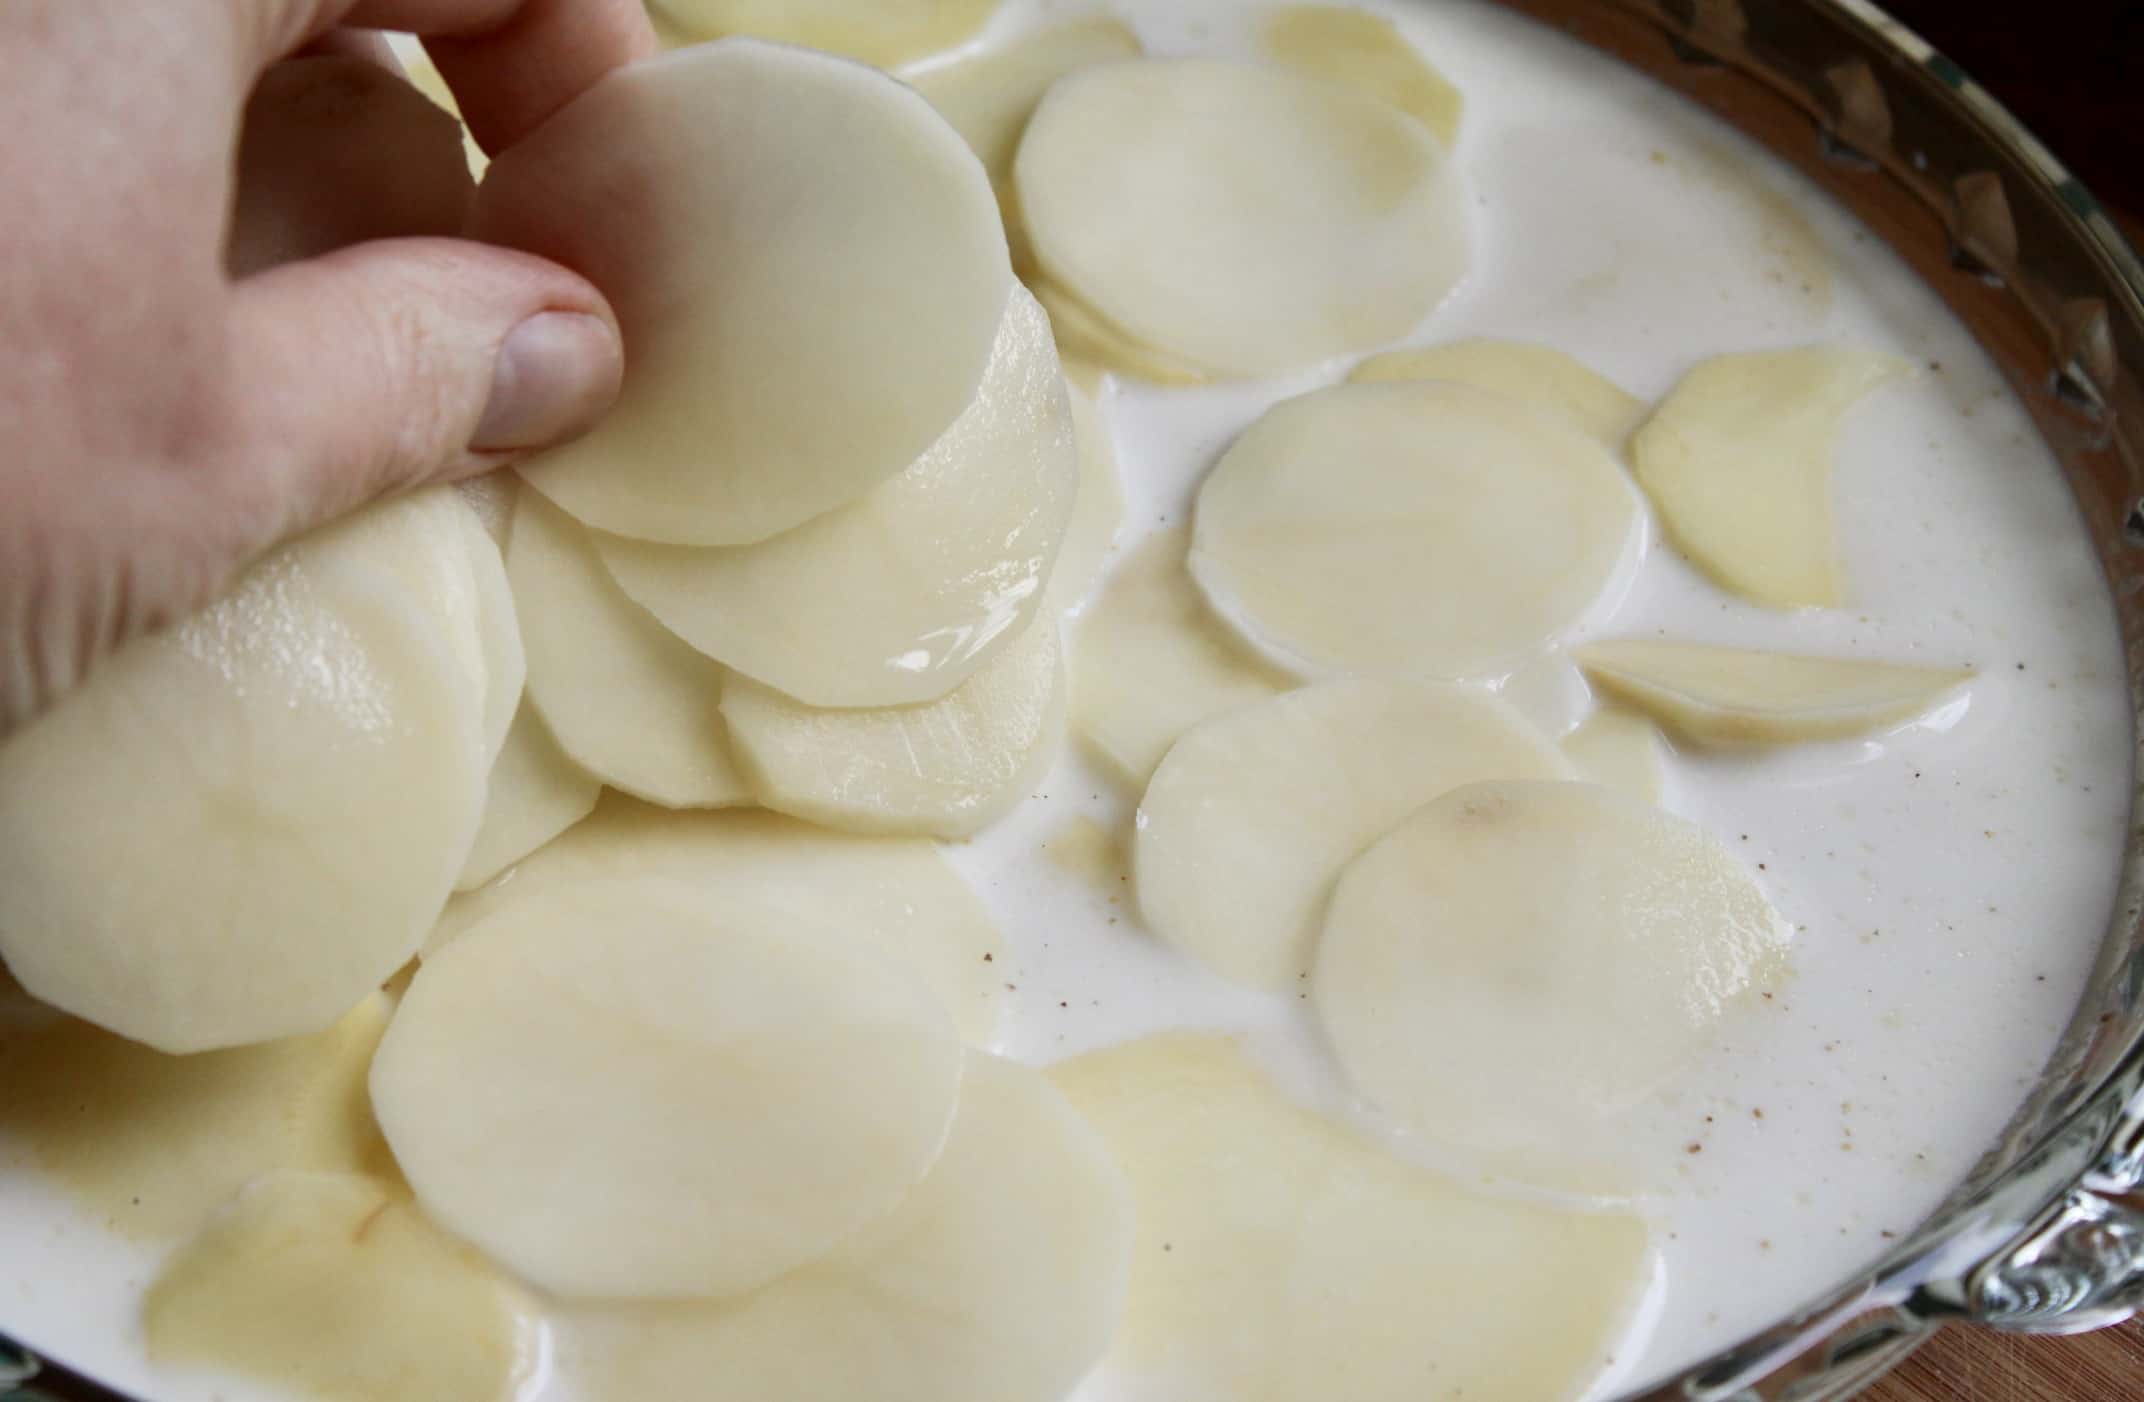 adding potato slices to milk